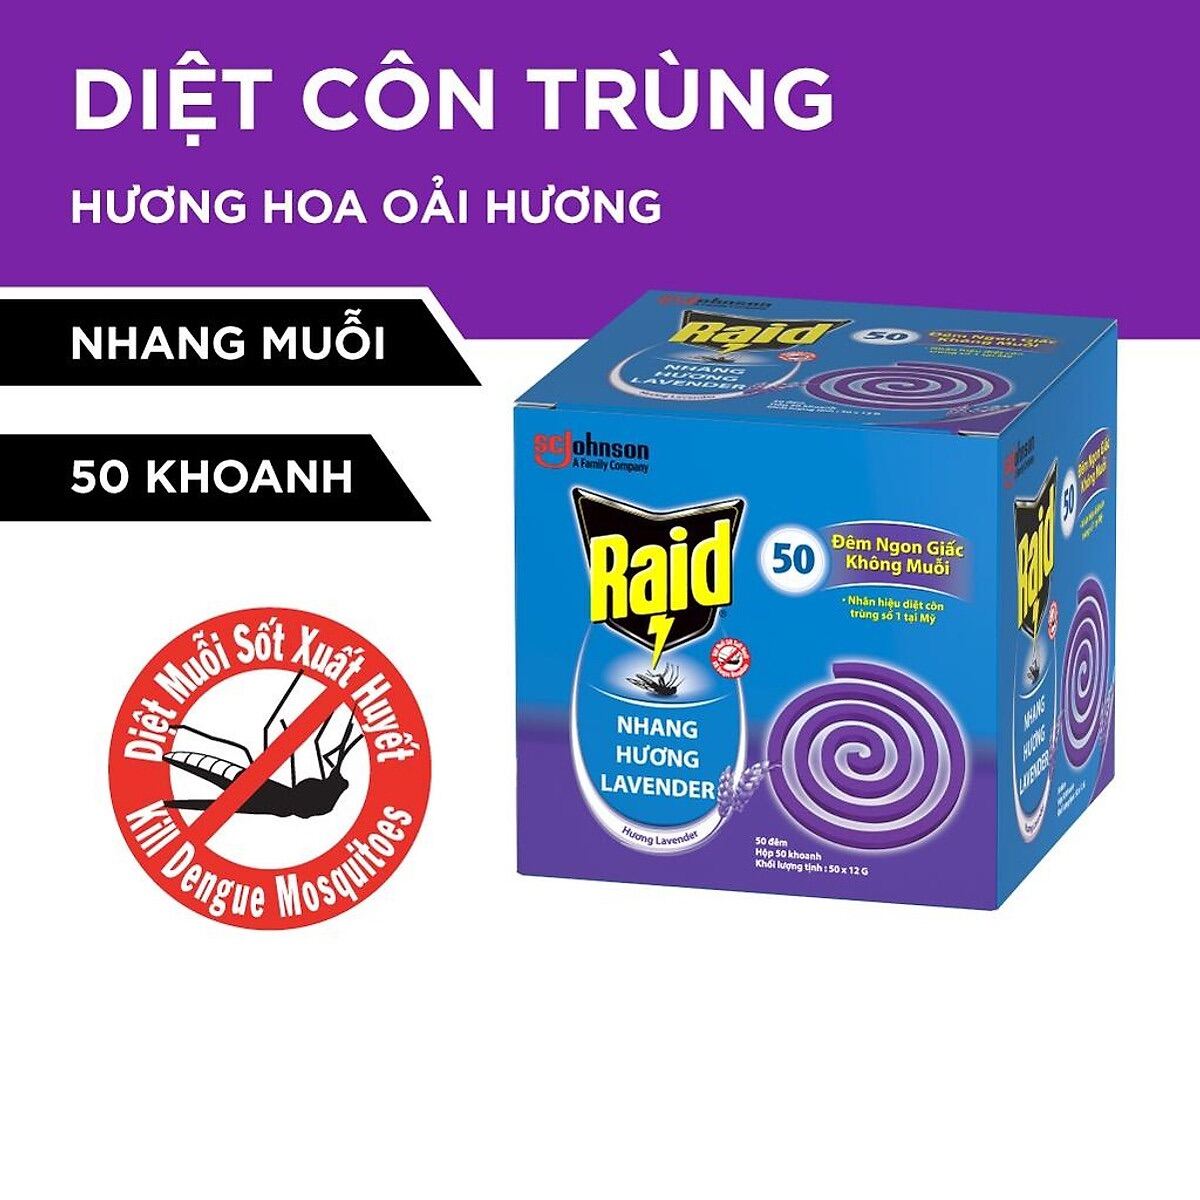 Nhang muỗi Raid hương Lavender 10 khoanh - Hàng chính hãng DKSH Việt Nam.